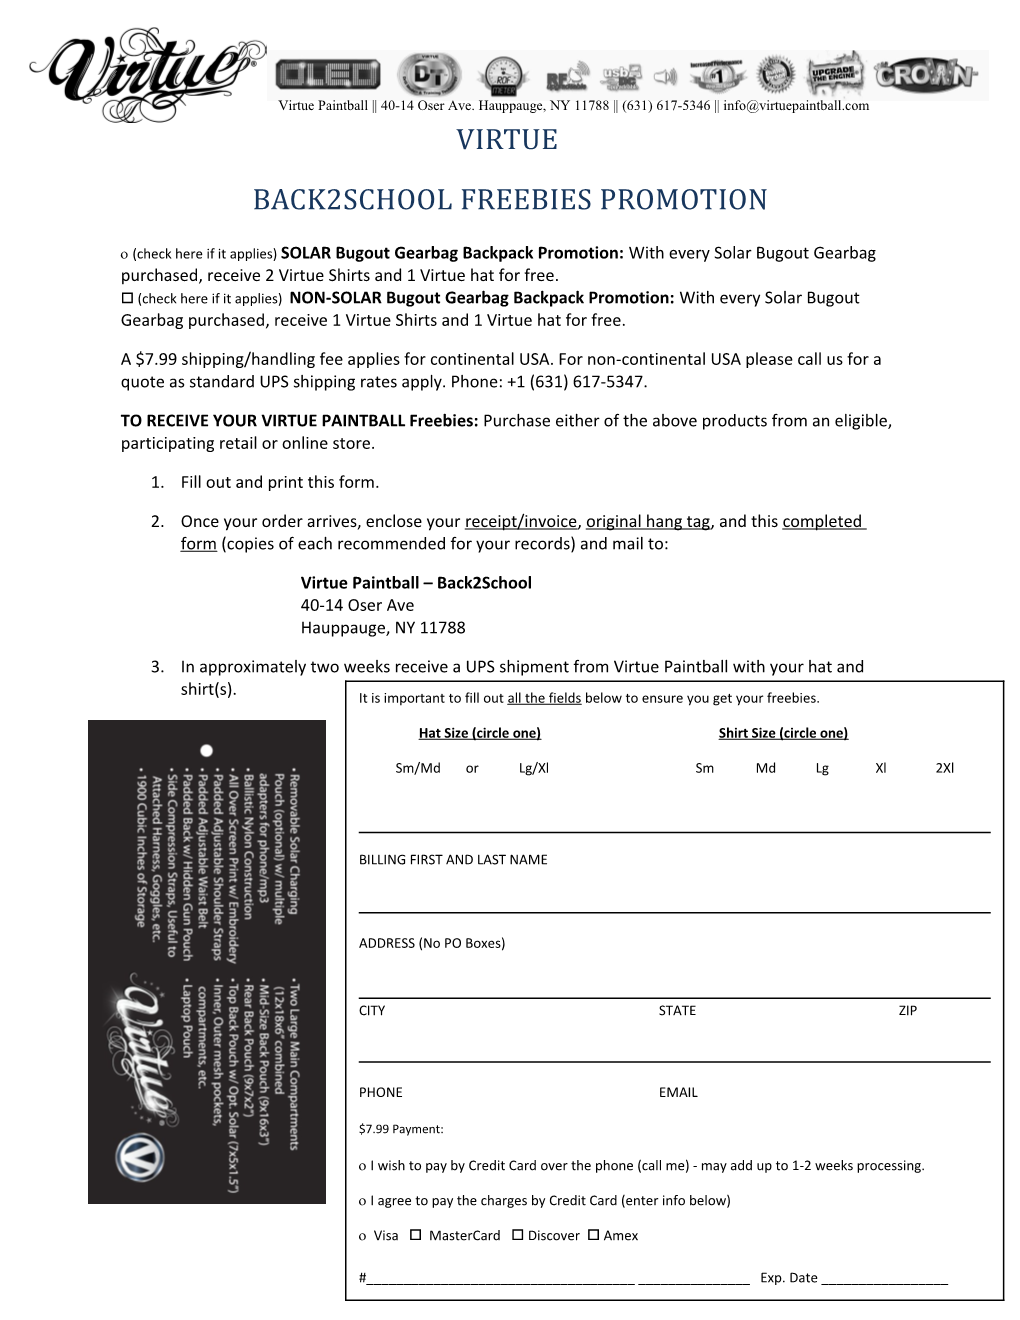 Back2school Freebies Promotion